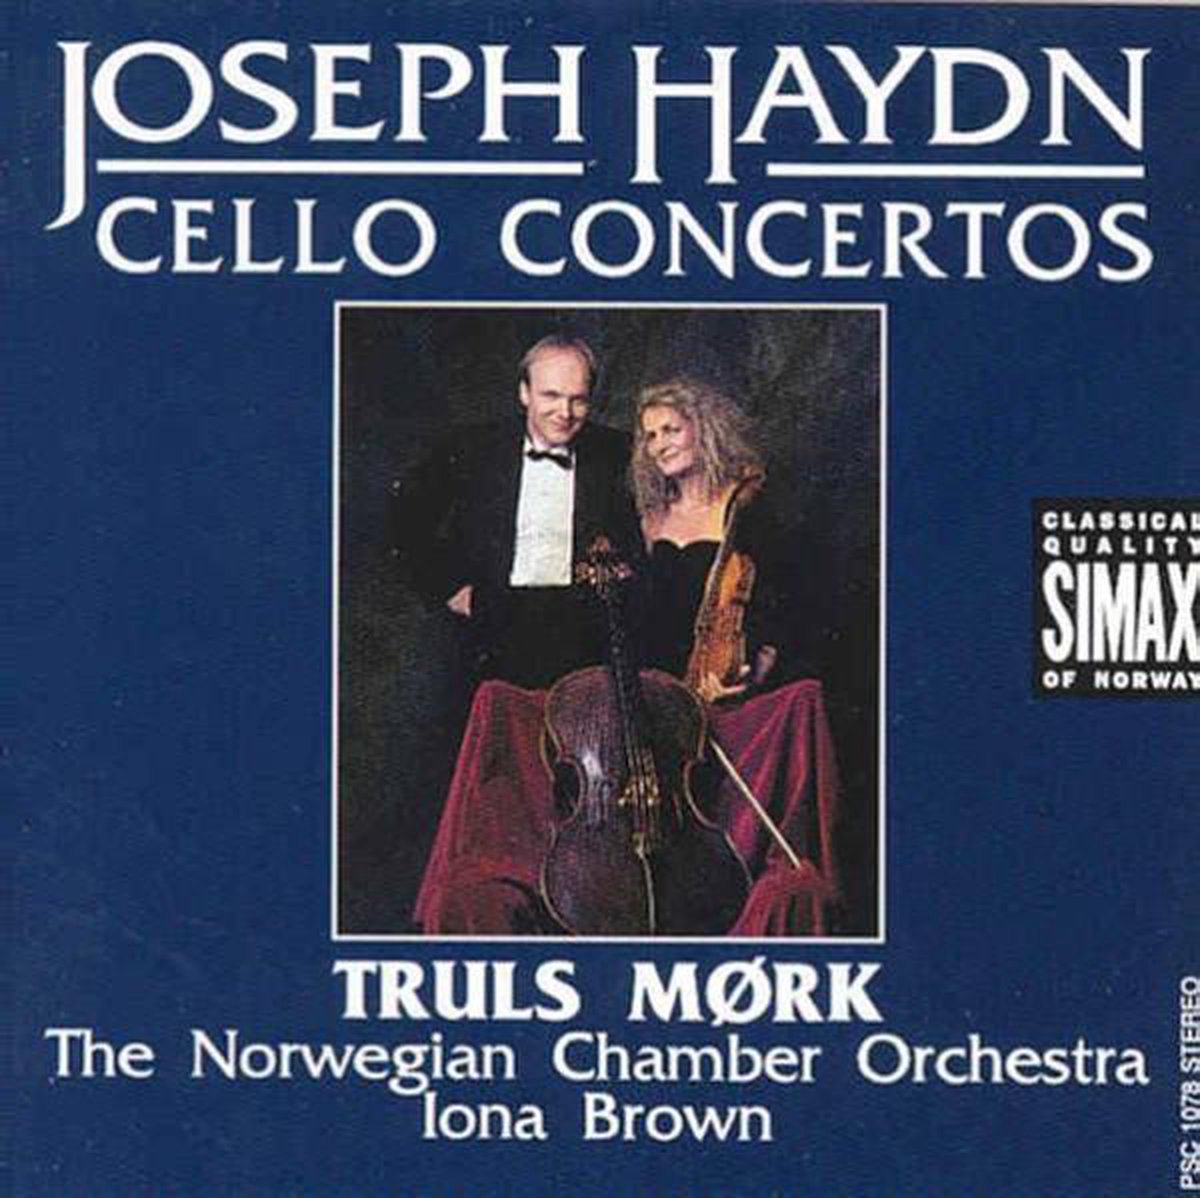 Haydn Cello Concertos - Mork